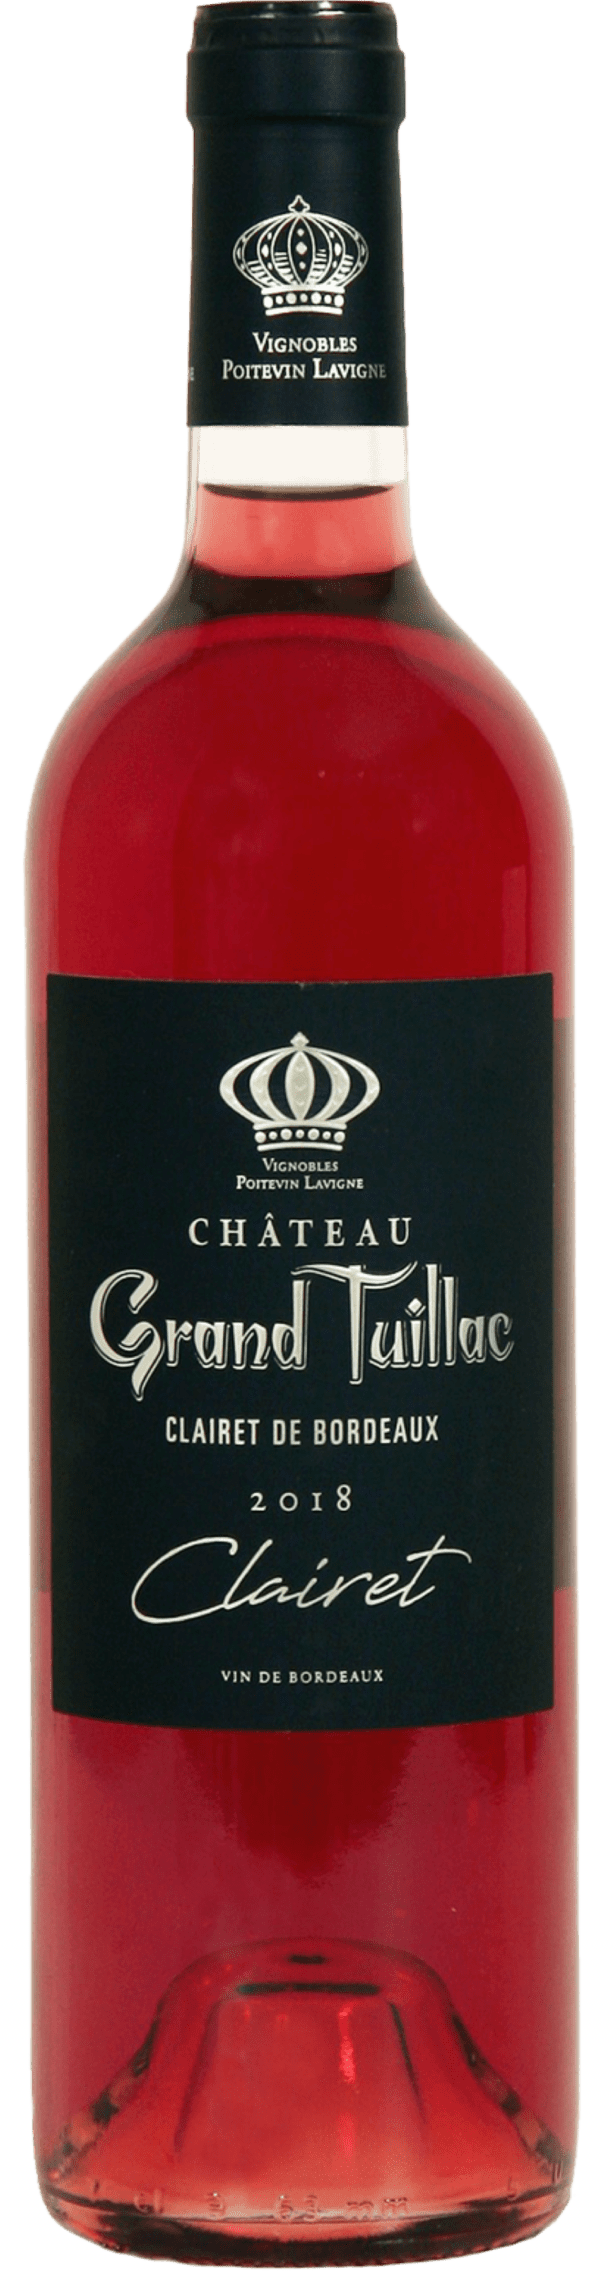 Clairet de Bordeaux